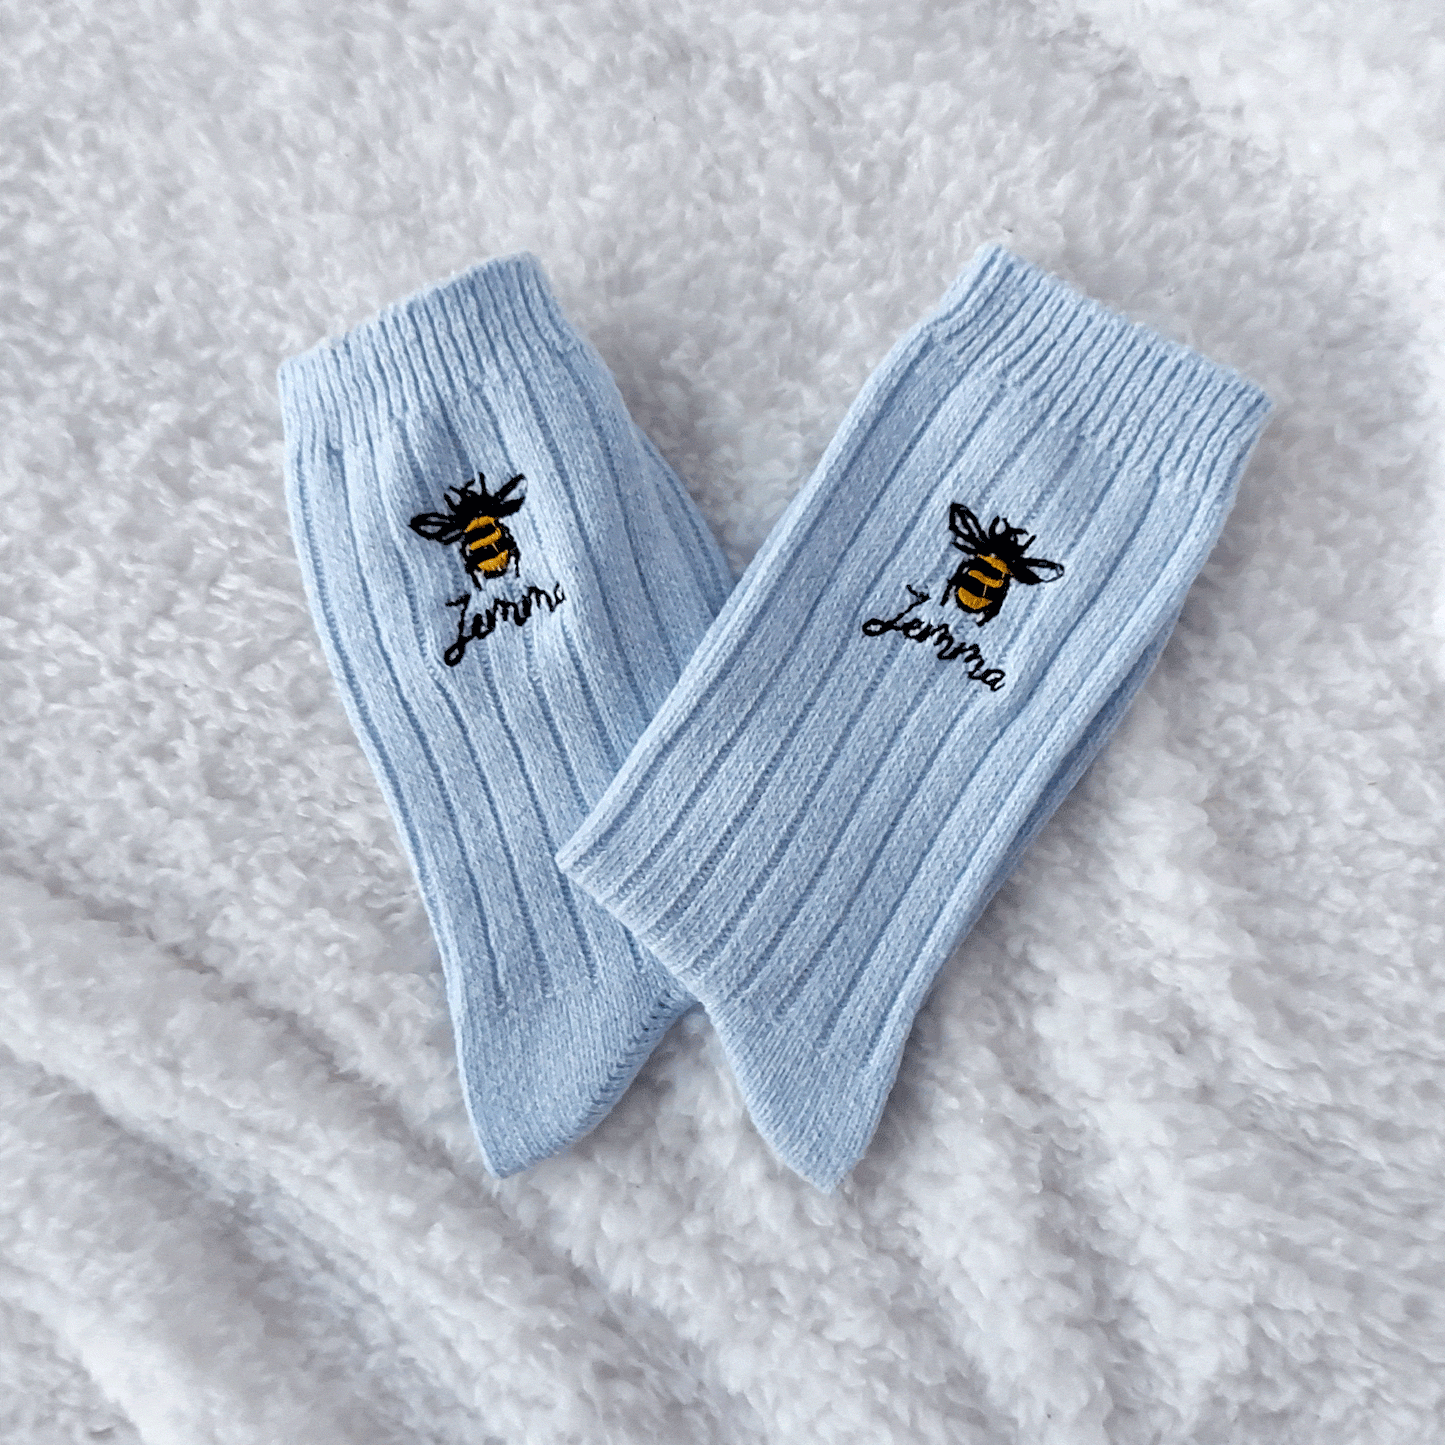 Personalised Embroidered Bee Snug Socks